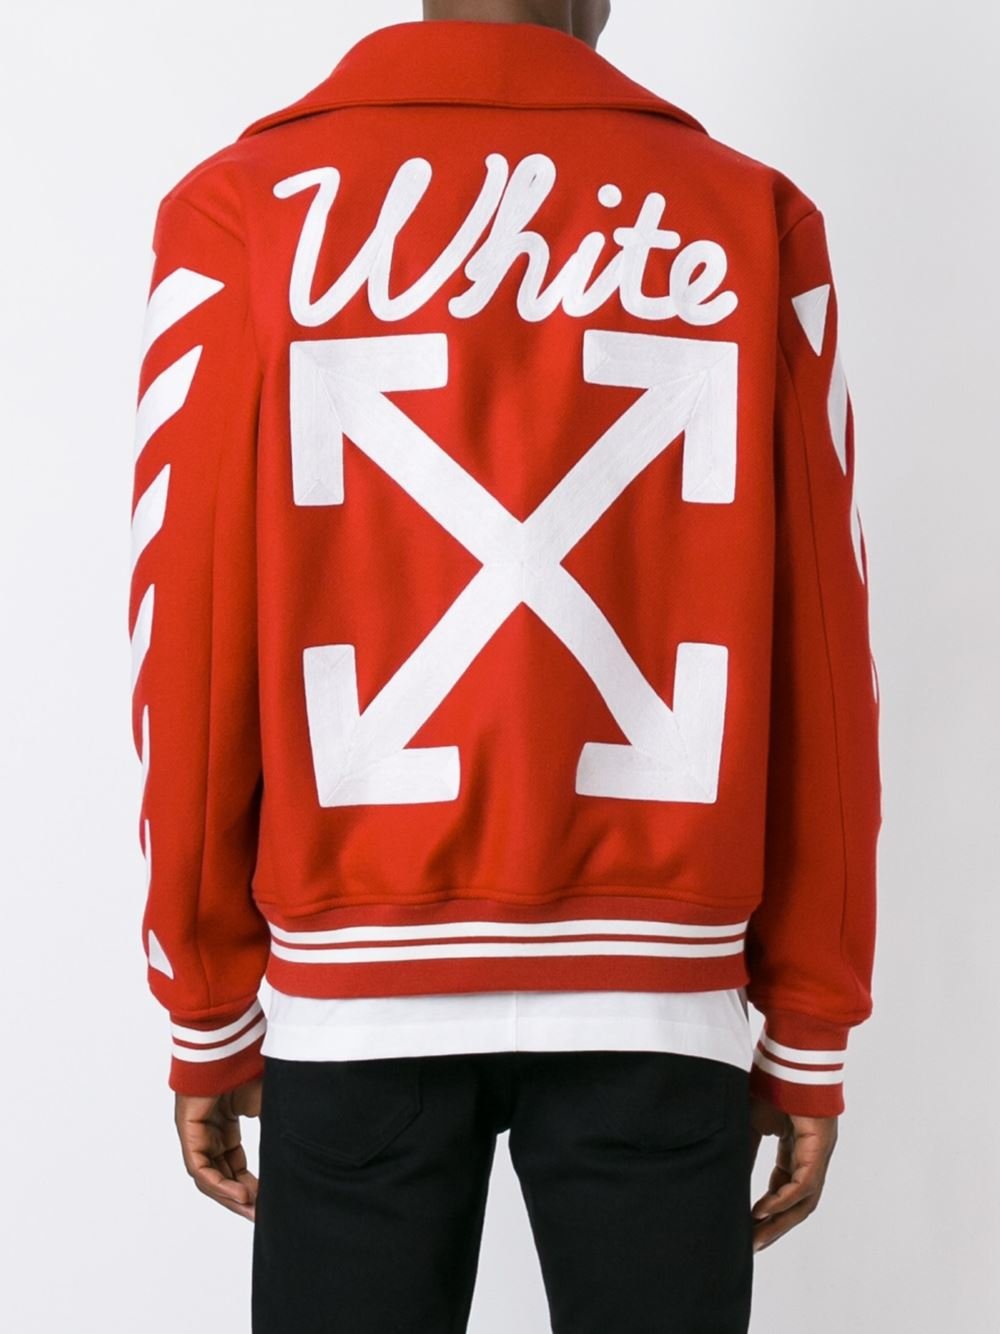 Off-White c/o Virgil Abloh On The Go Varsity Jacket in Red for Men